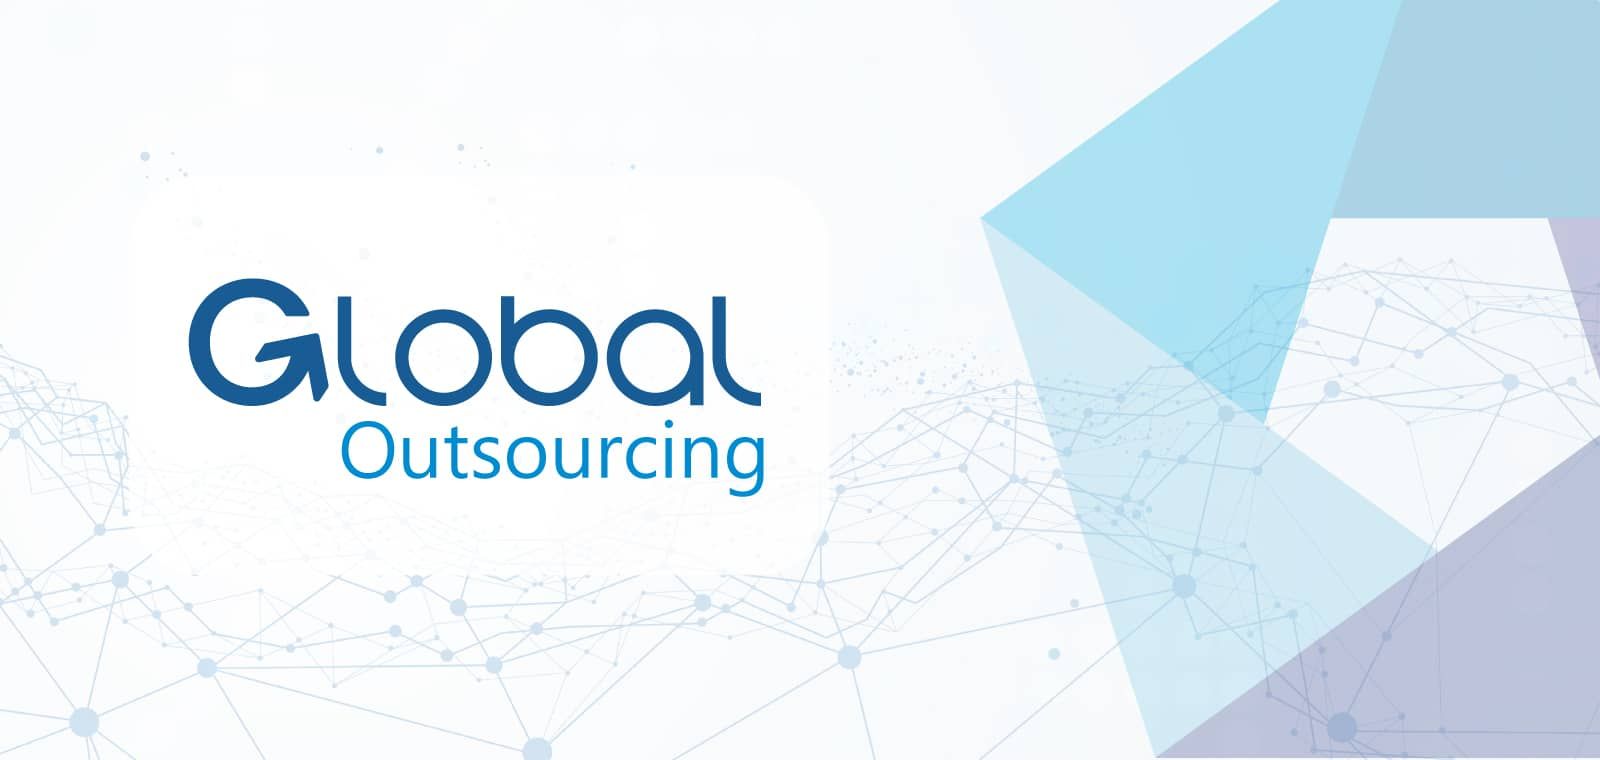 Global Outsourcing: caso de éxito en Science & Marketing